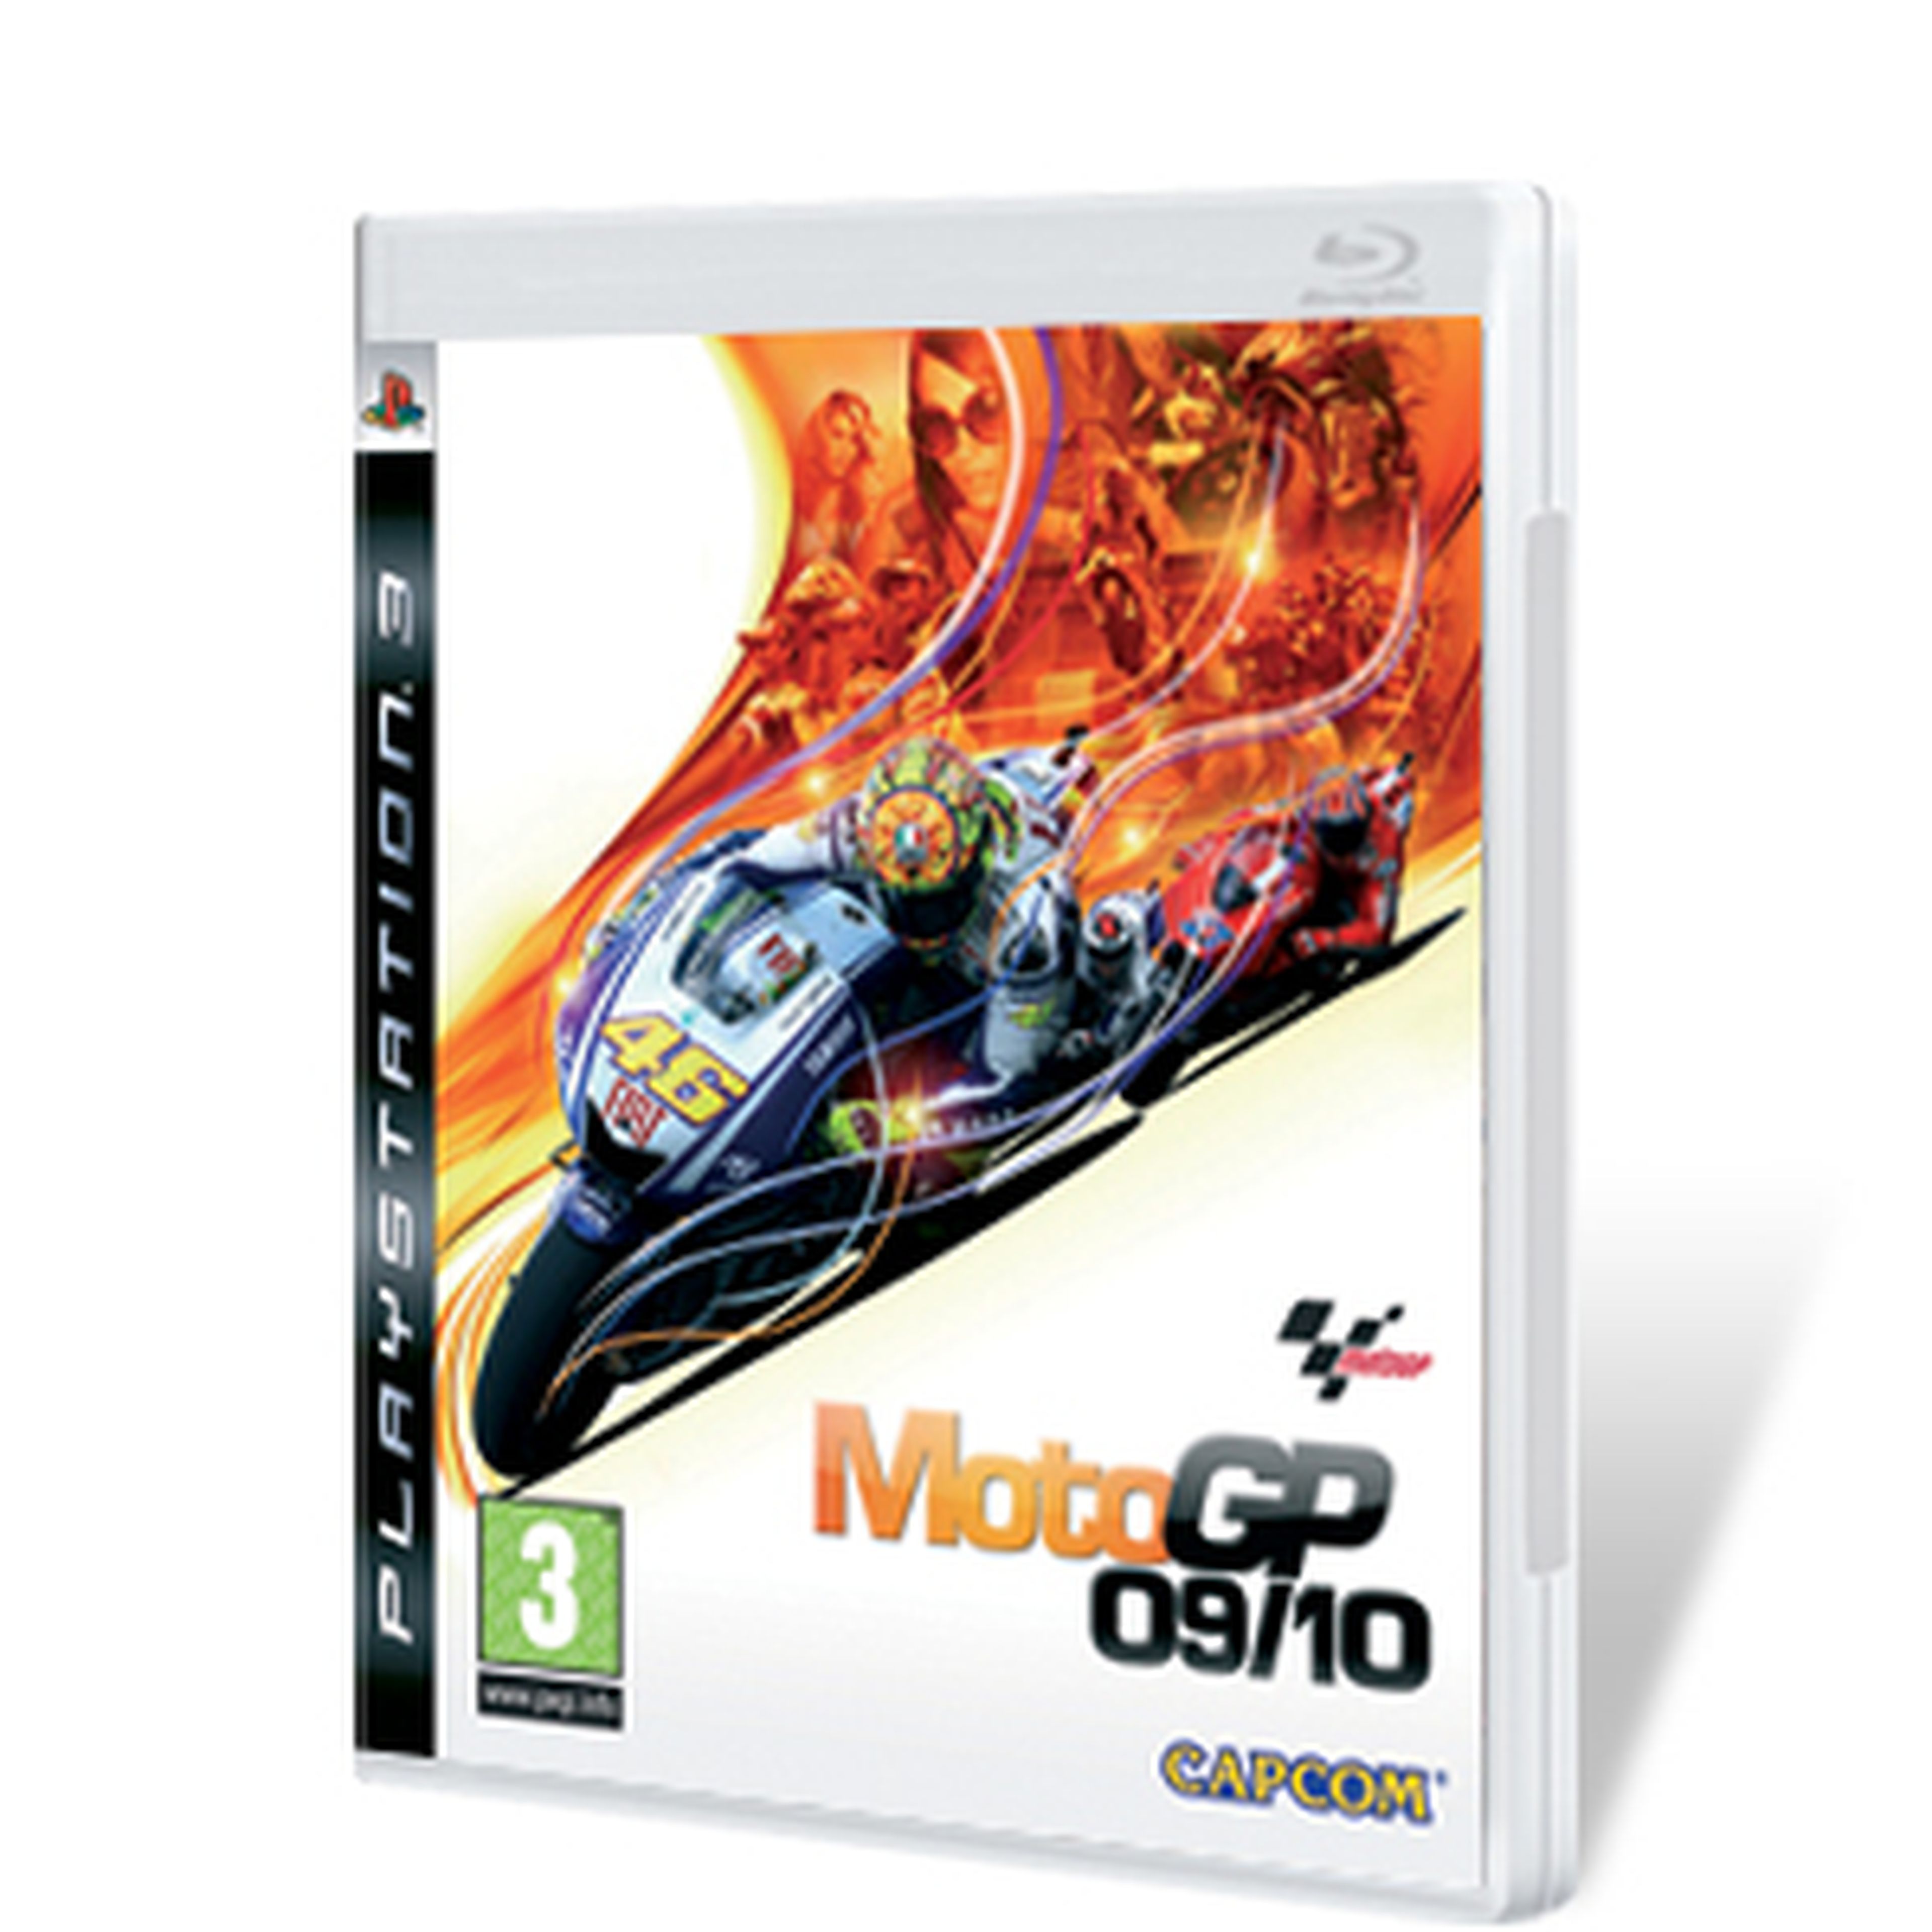 MotoGP 09/10 para PS3